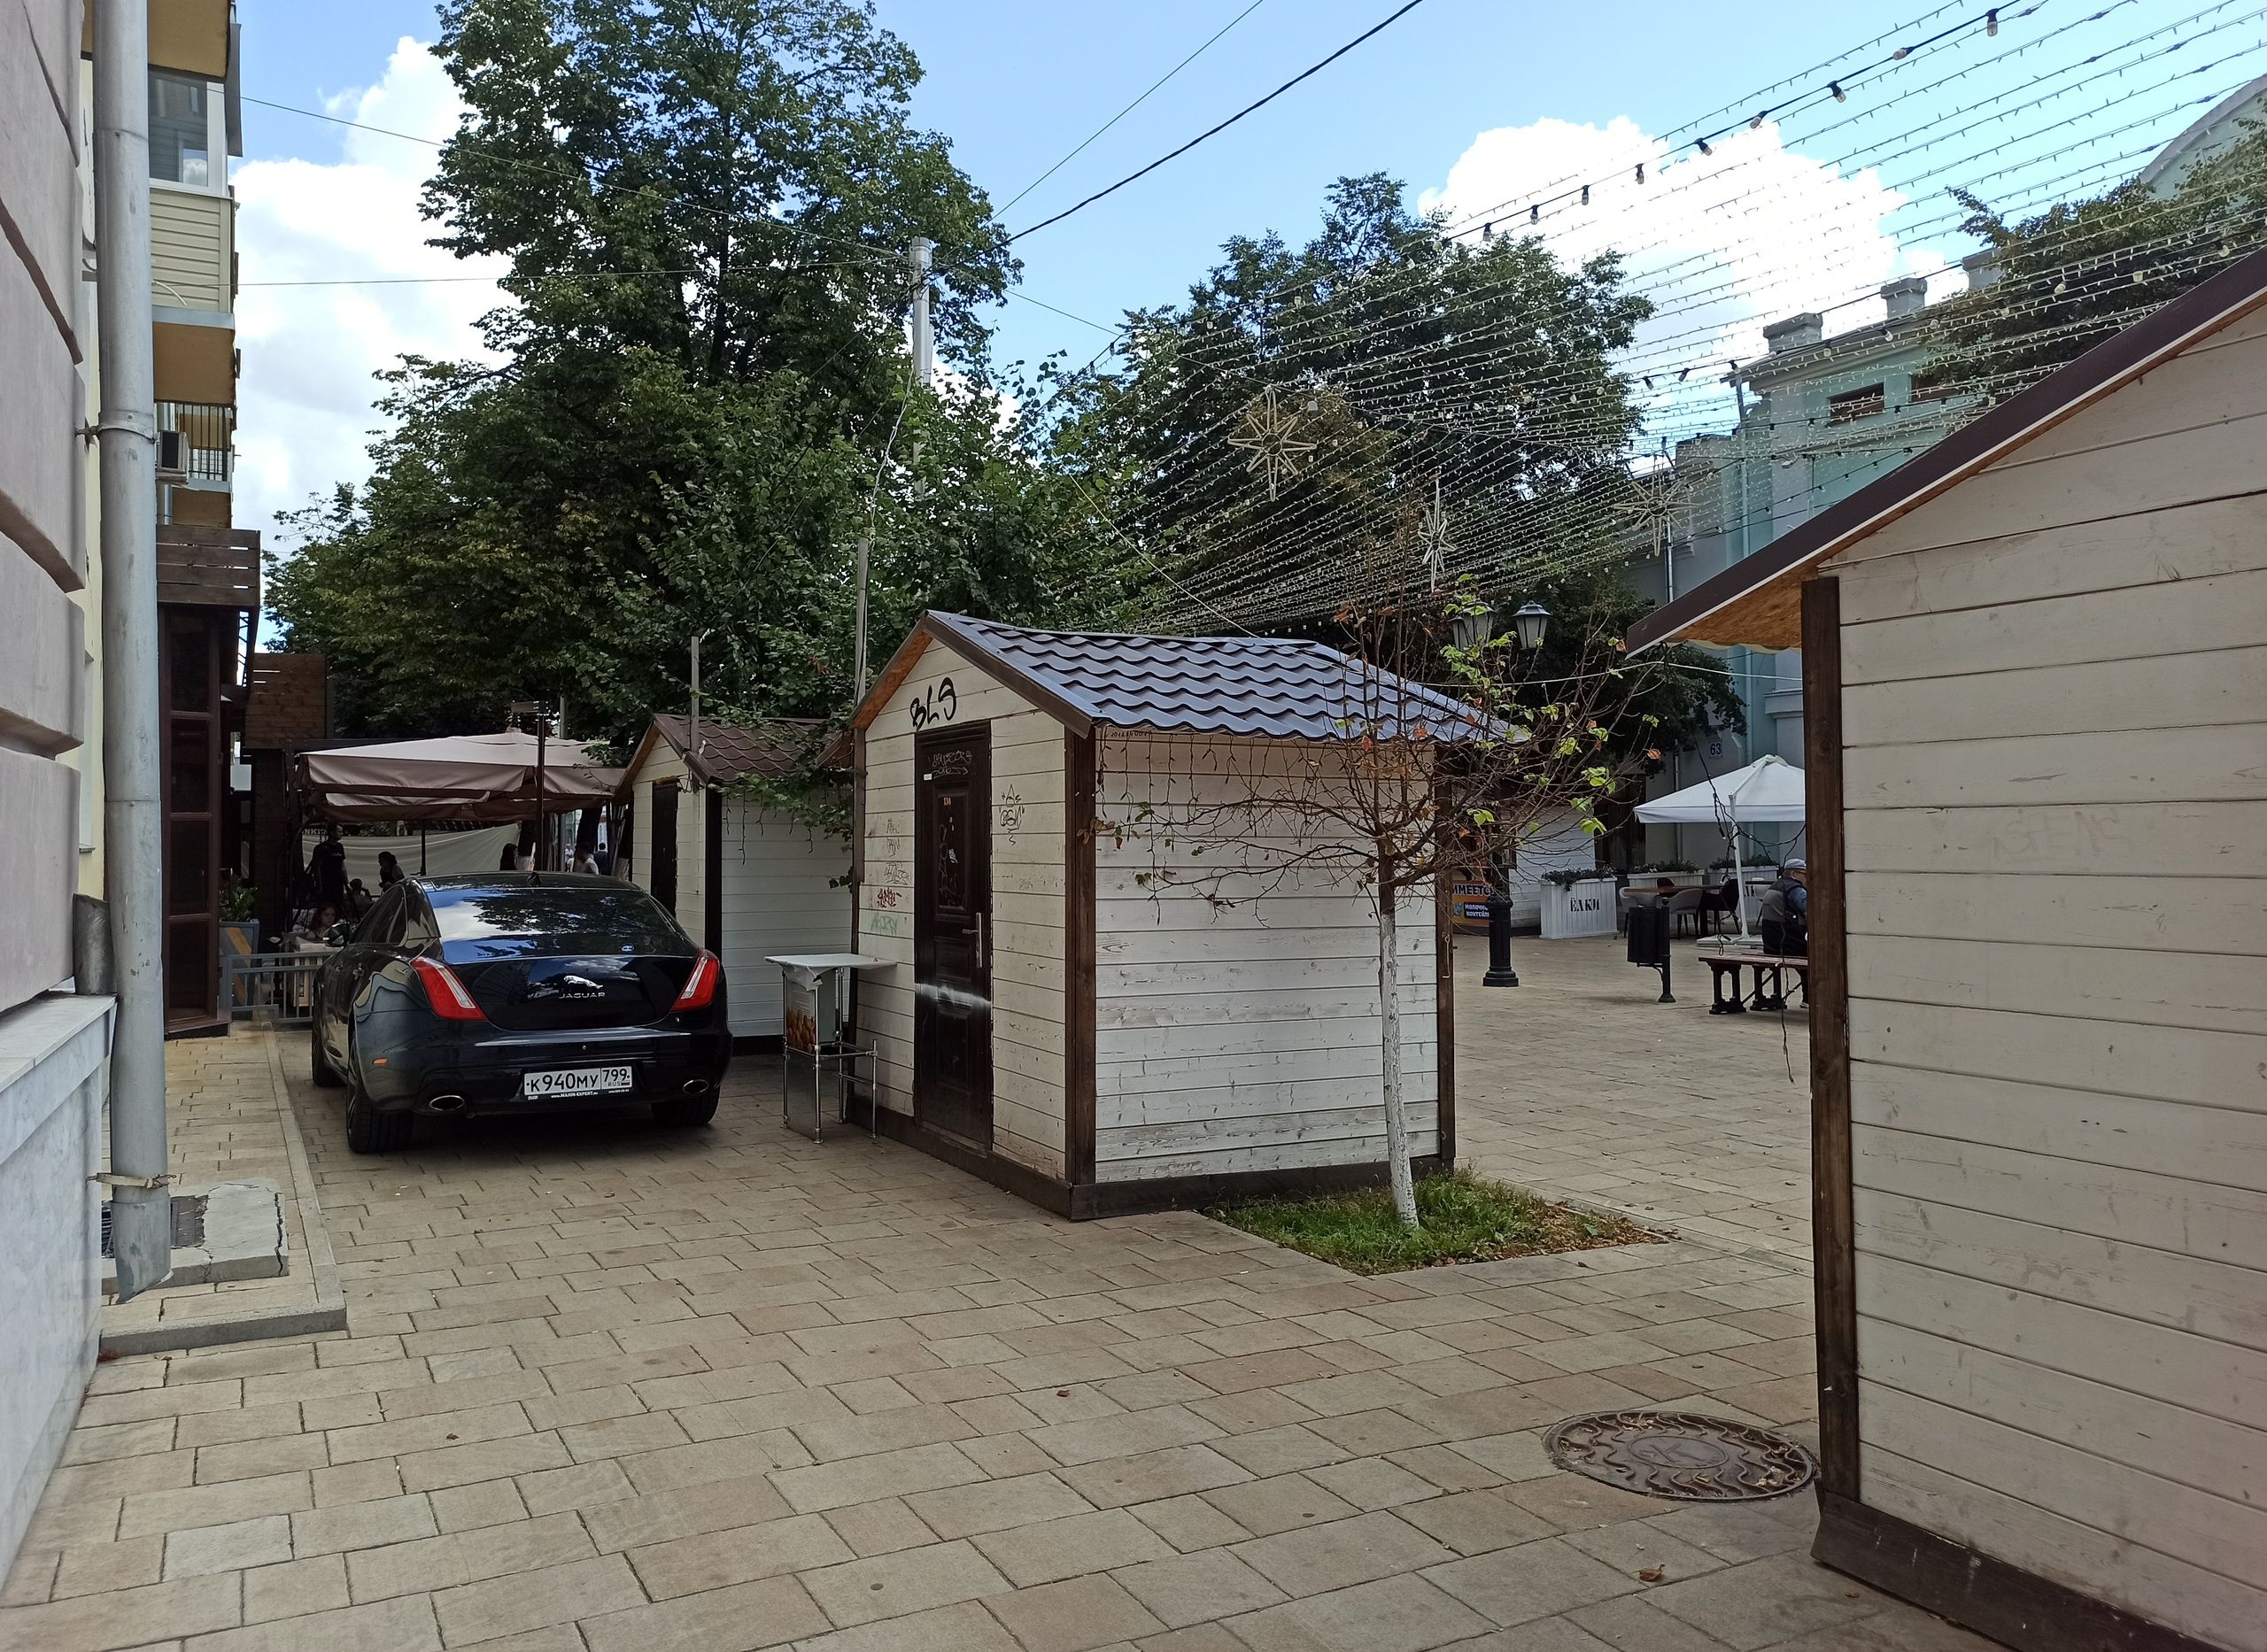 Фото: на улице Почтовой Jaguar припарковался у летней веранды кафе